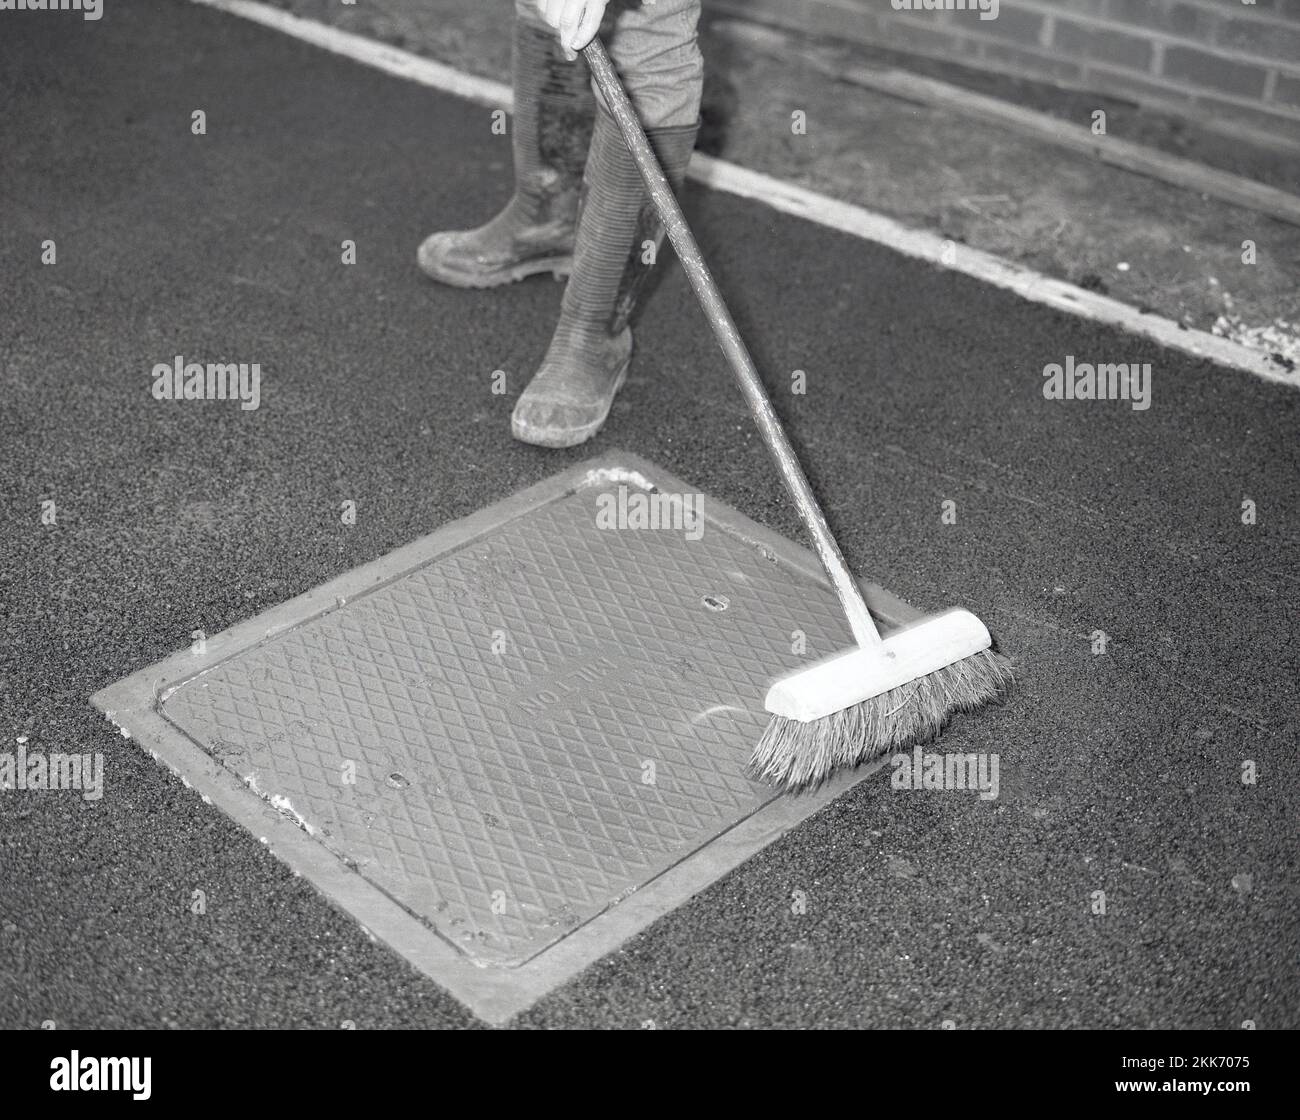 1980s, re-surfacing una calzada, un trabajador usando una escoba para cepillar cualquier residuo negro de macadam dejado en una tapa de la boca de inspección después de asfaltar una calzada de la casa, Inglaterra, Reino Unido. Foto de stock